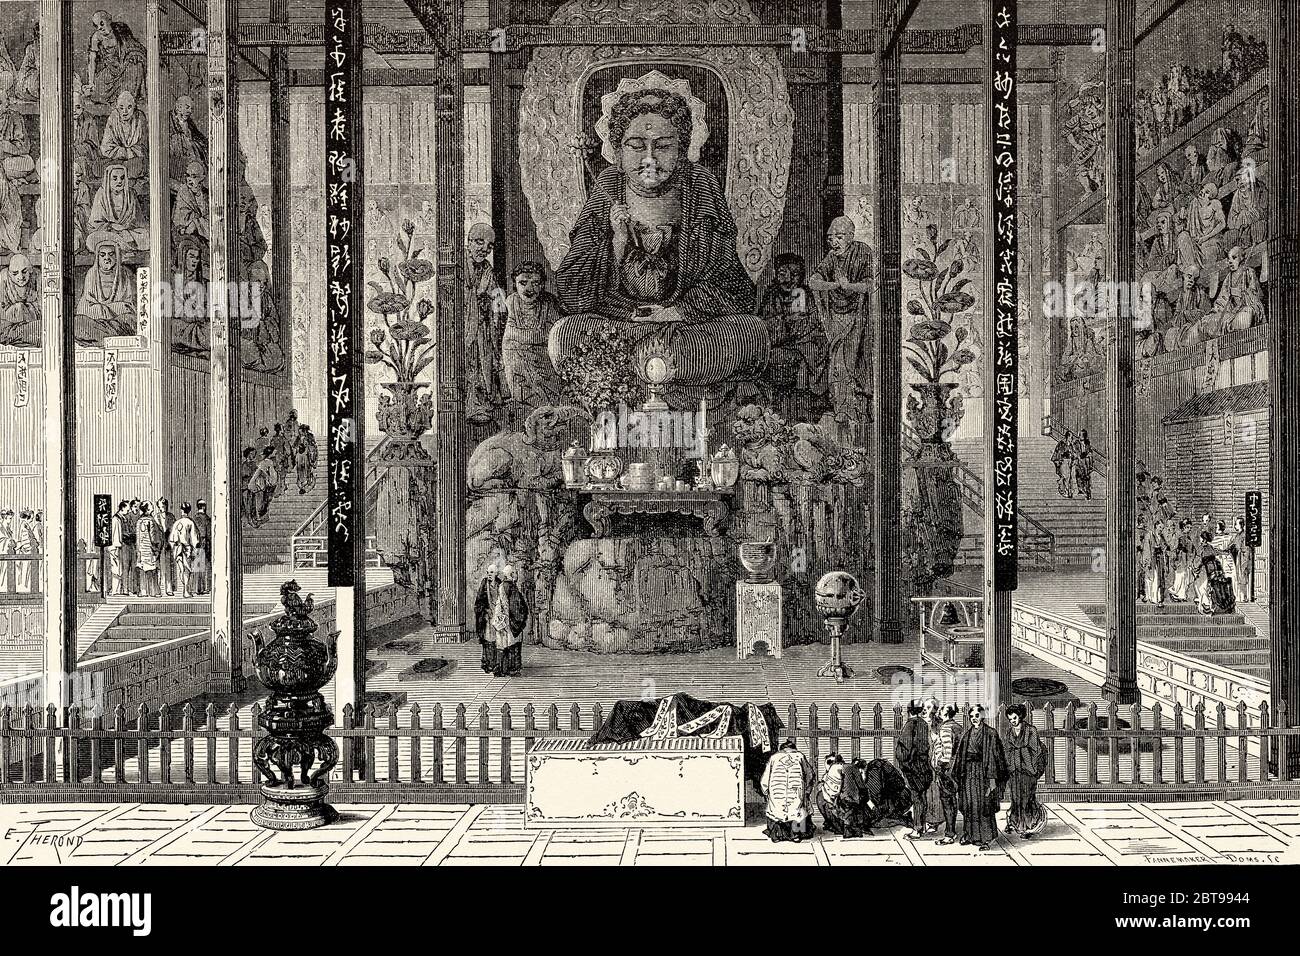 Buddhistischer Tempel, China. Alte 19. Jahrhundert gravierte Illustration, Reise nach Peking und Nordchina 1873 Stockfoto